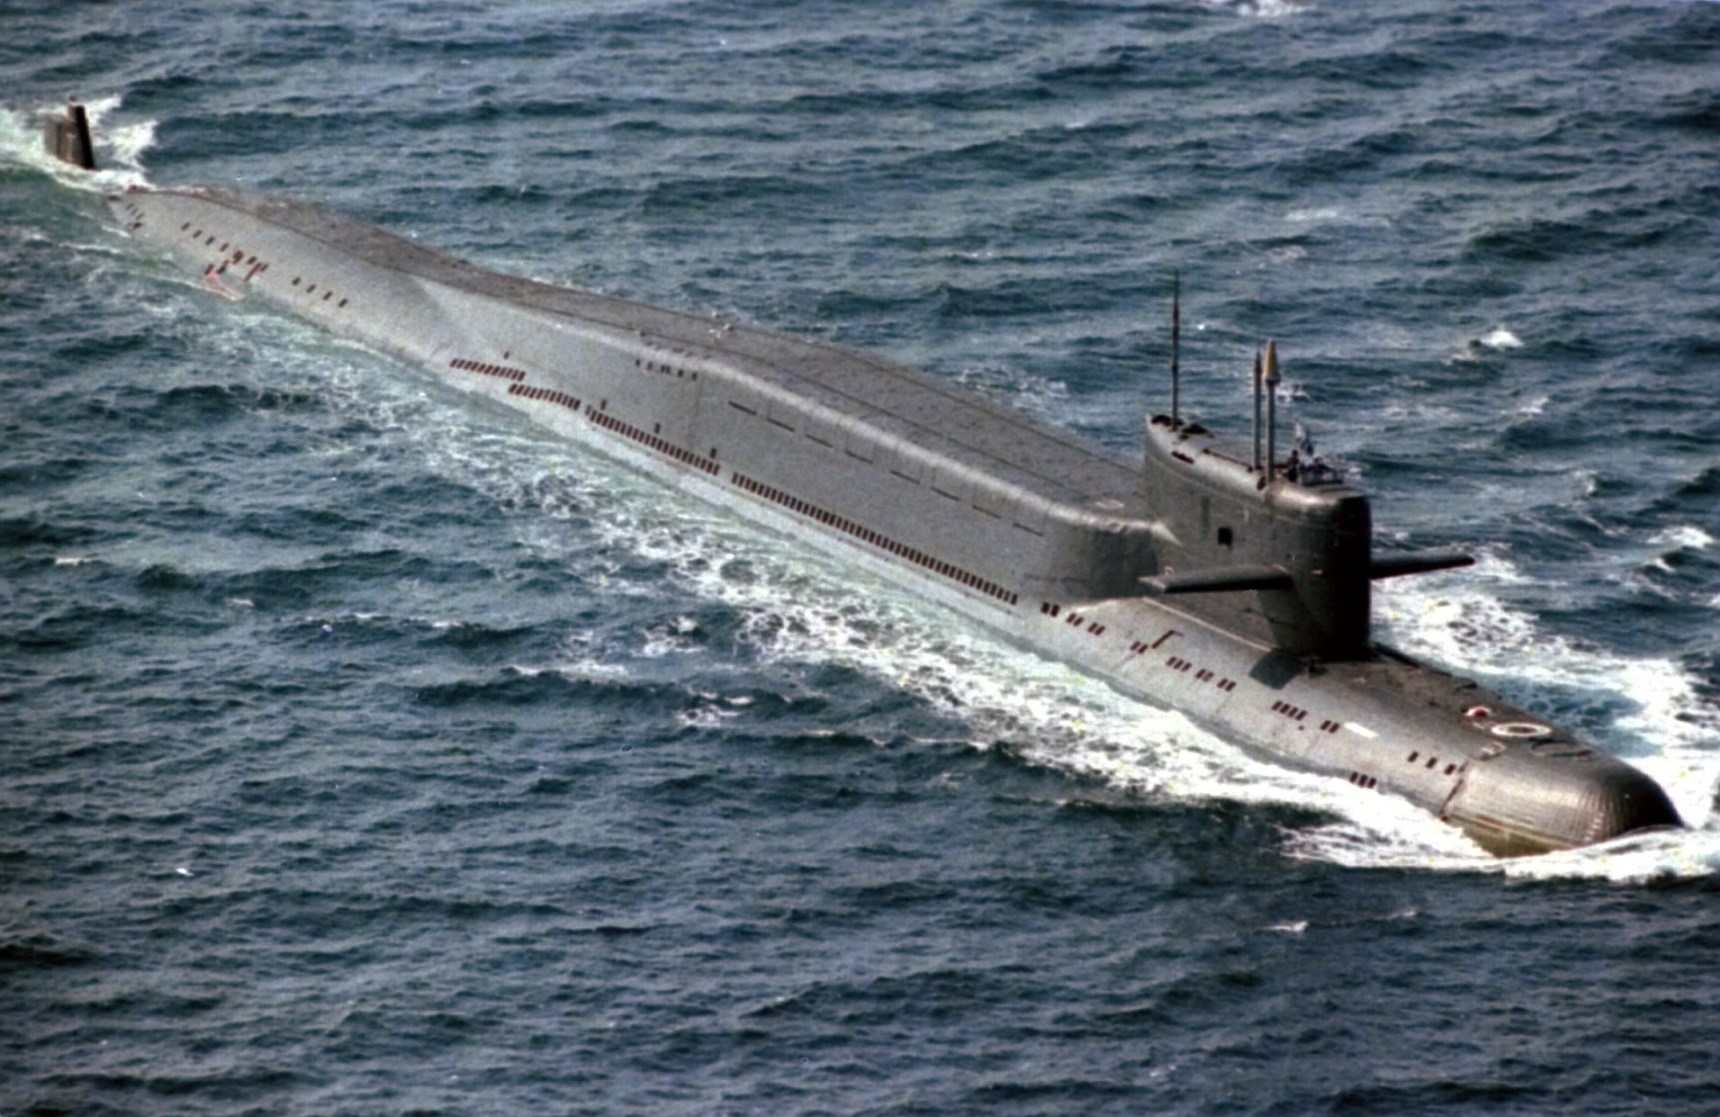 【GTA大型载具】卢恩·虎鲸 战略核潜艇